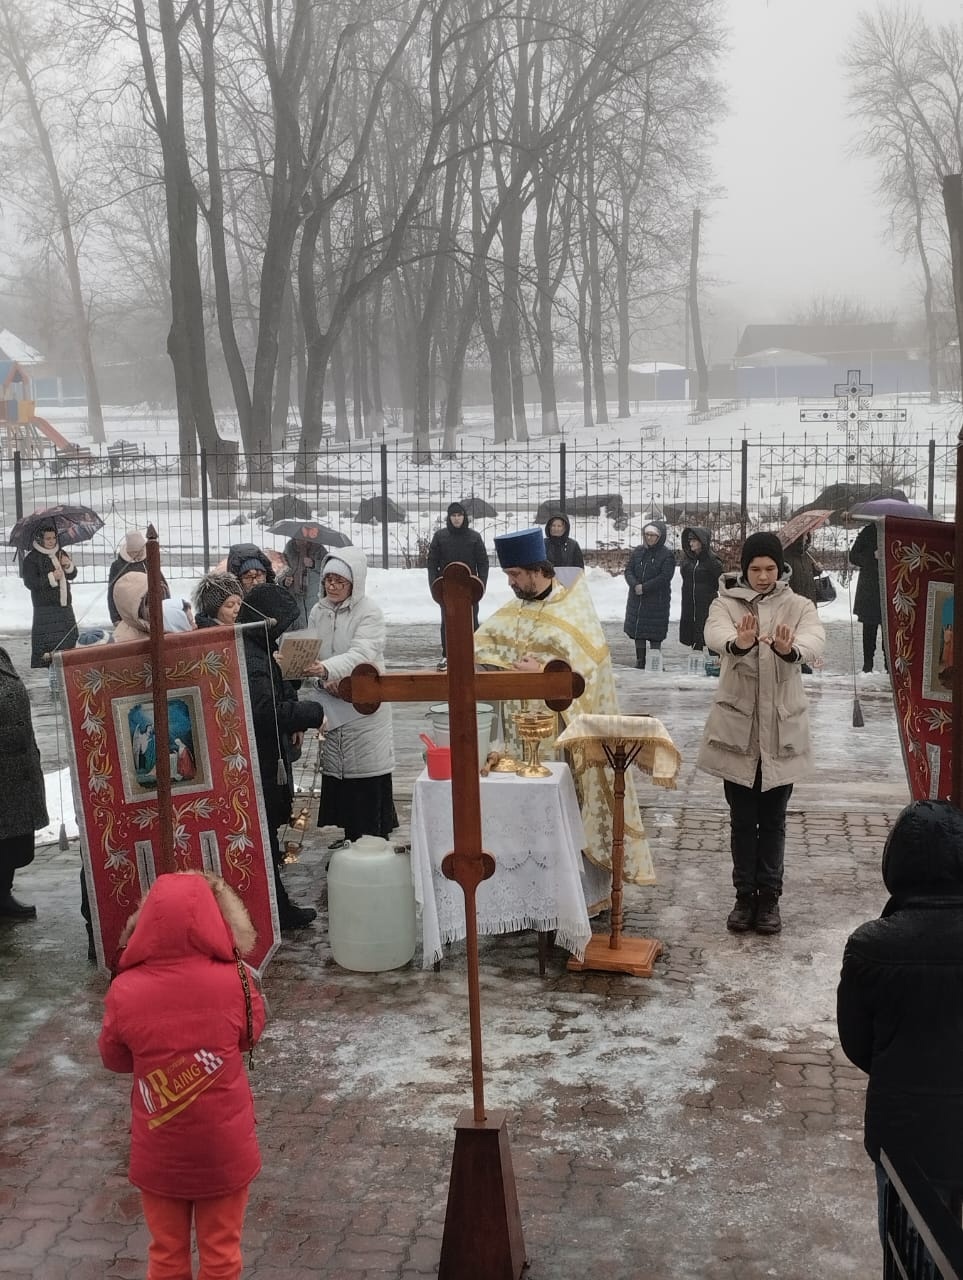 Сегодня в Храме Святителя Николая Чудотворца села Купино прошла праздничная служба и освящение воды.